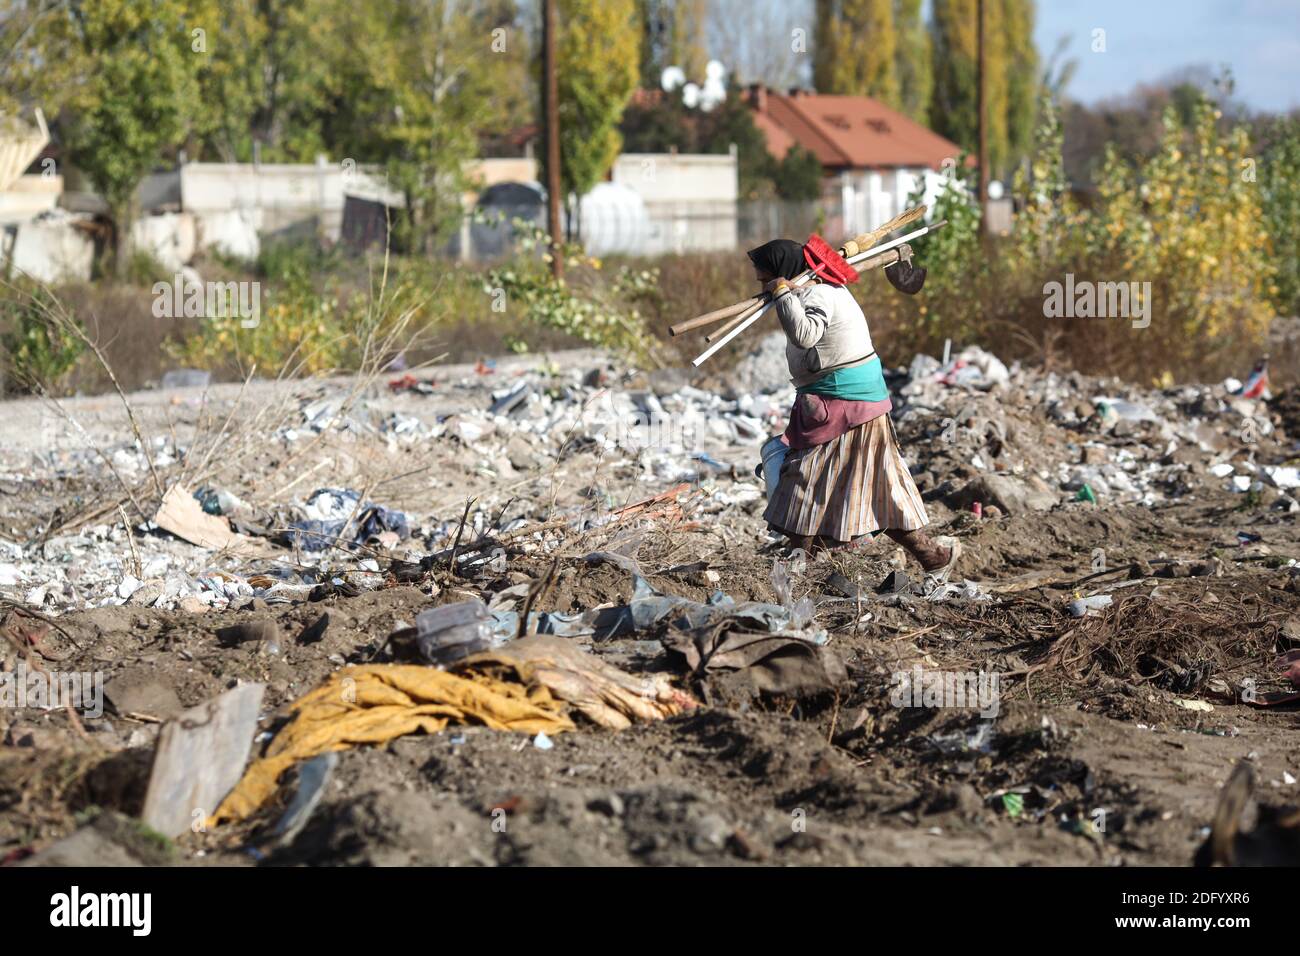 Bucarest, Romania - 15 novembre 2013: I poveri imballano e trasportano i loro effetti personali dopo essere stati sfrattati dalla polizia dai loro rifugi improvvisati. Foto Stock